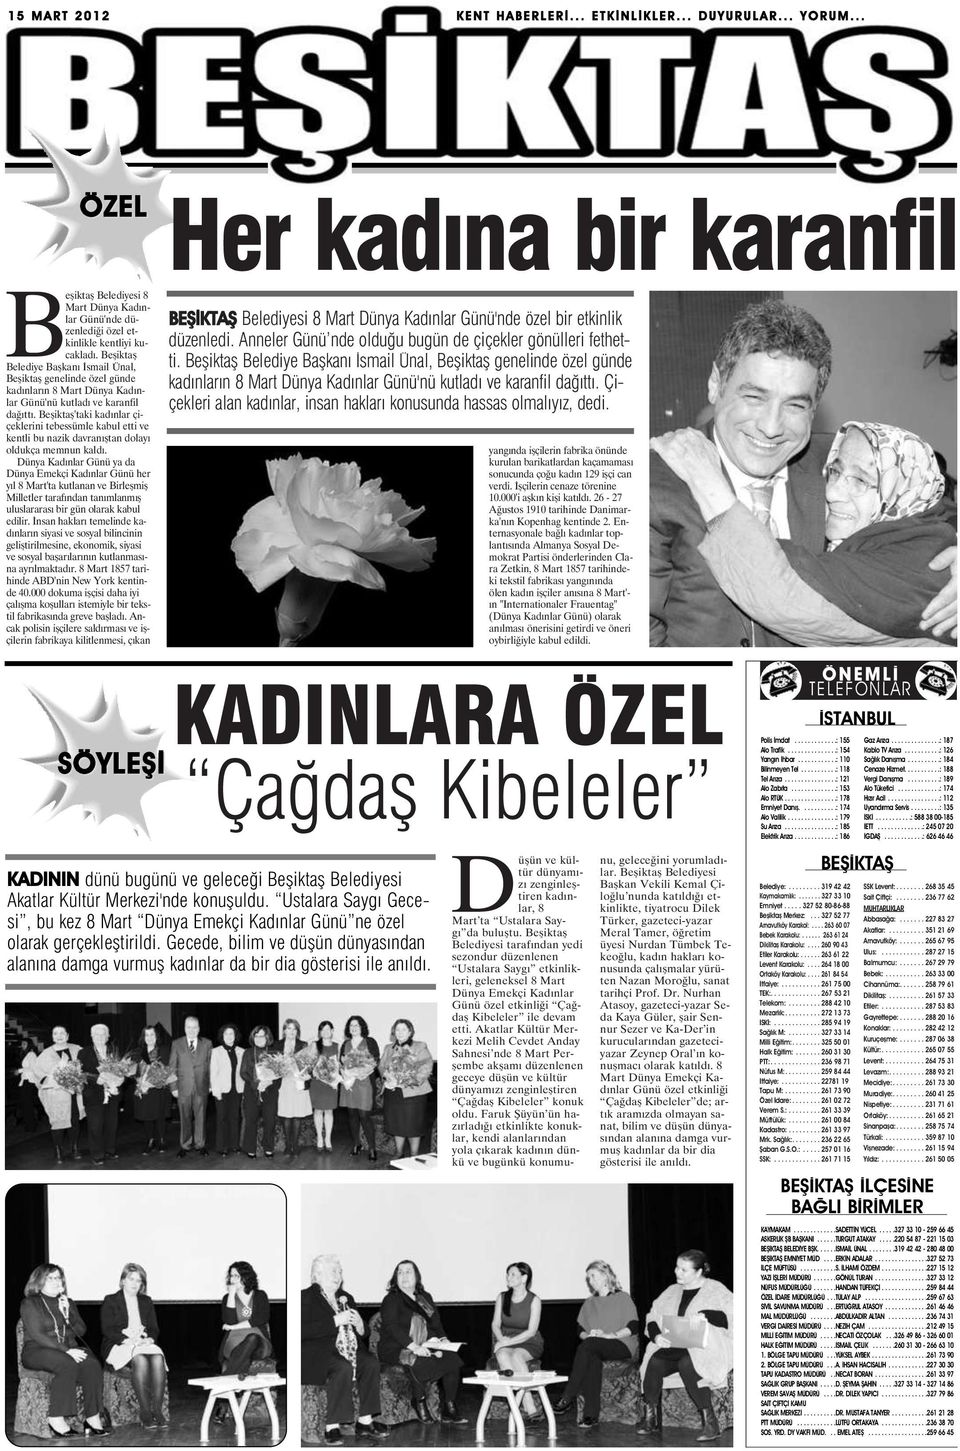 Beşiktaş Belediye Başkanı İsmail Ünal, Beşiktaş genelinde özel günde kadınların 8 Mart Dünya Kadınlar Günü'nü kutladı ve karanfil dağıttı.